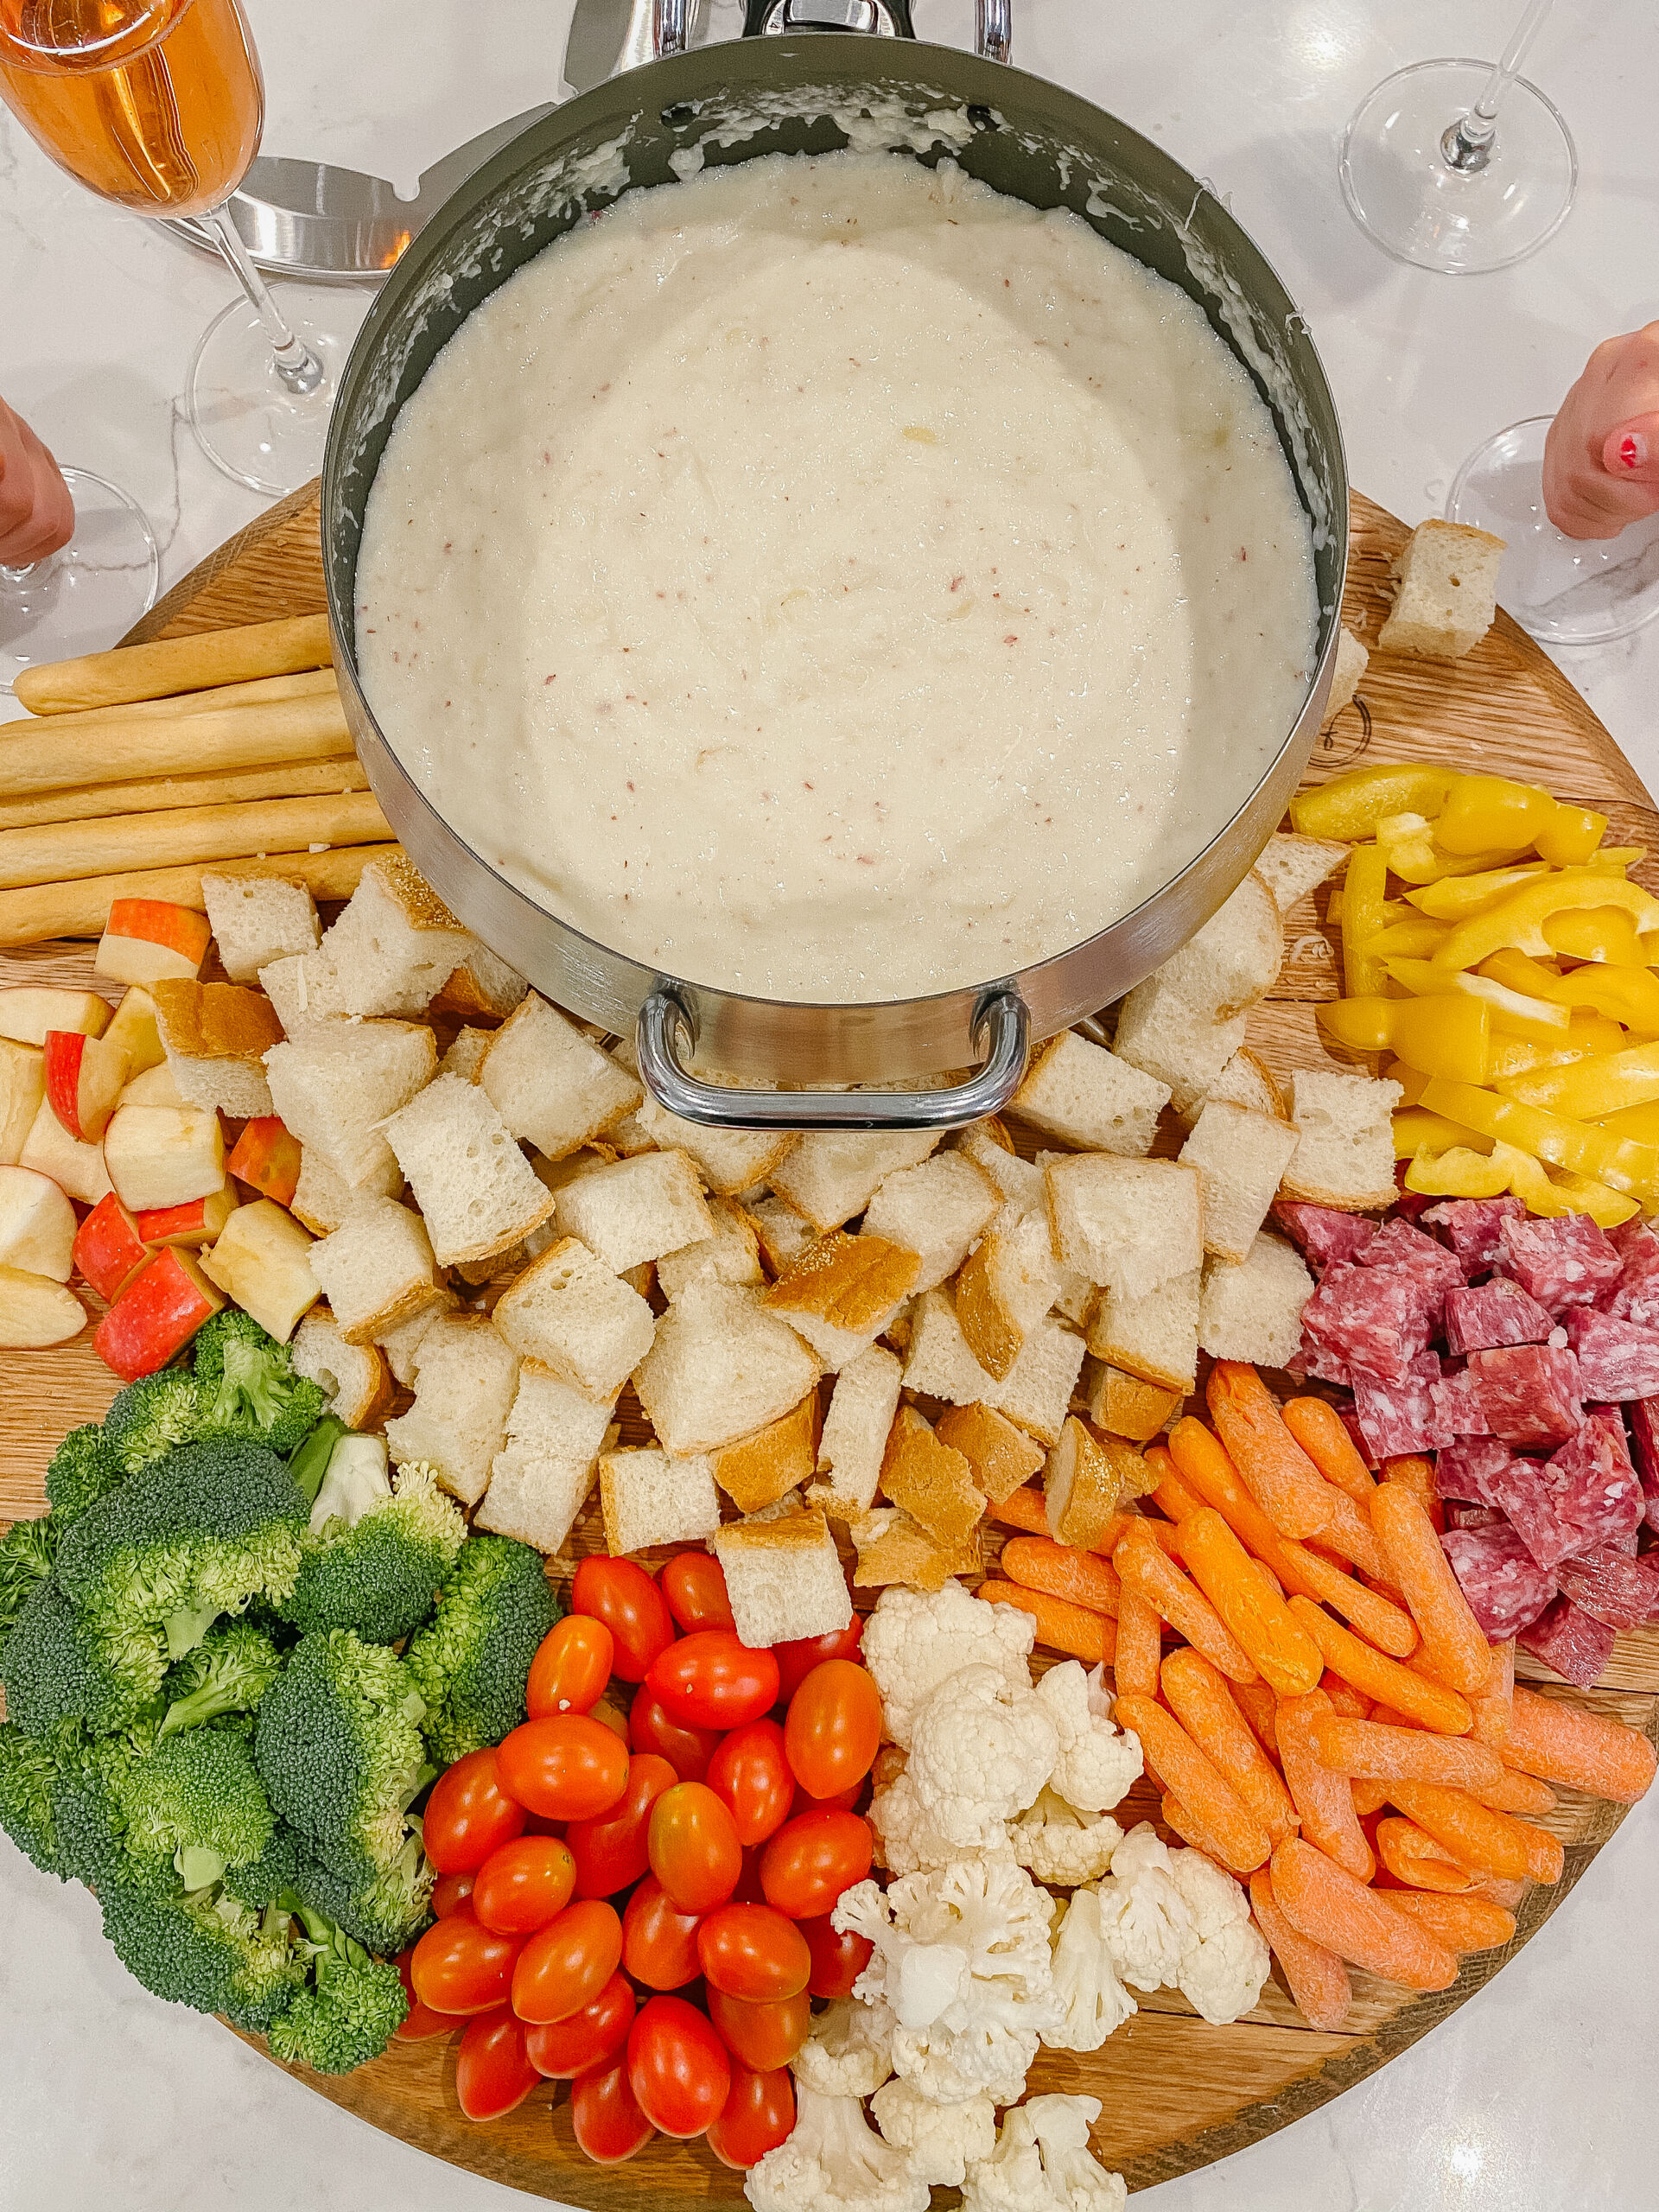 fondue recipes - cheese